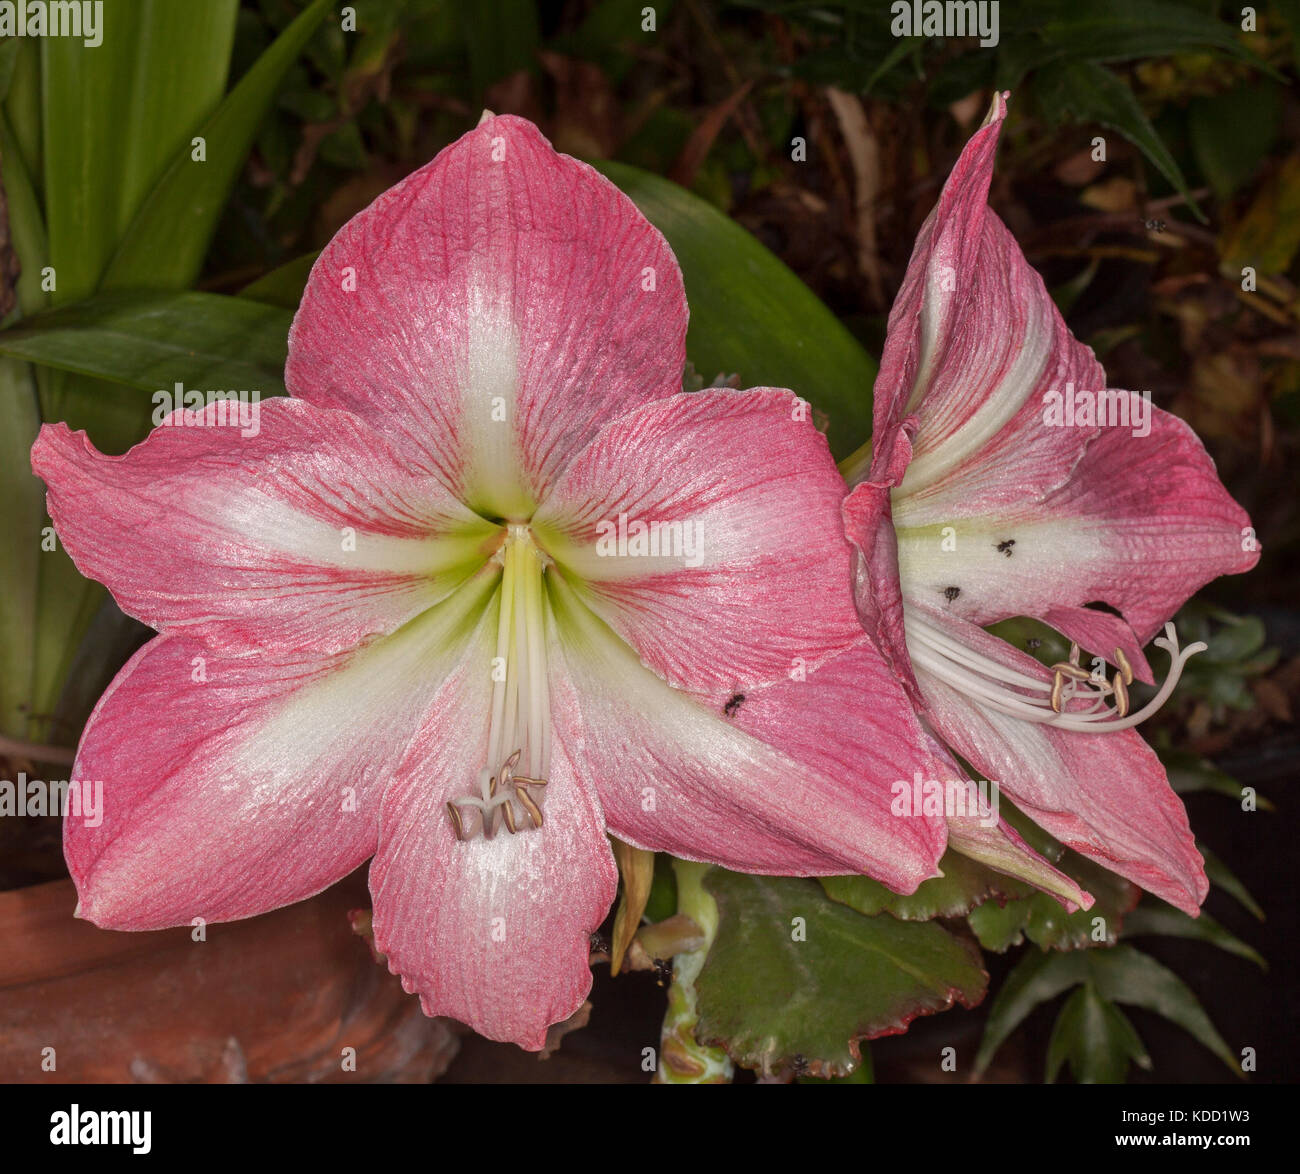 Grandes fleurs rose vif d'hippeastrum 'jenny' avec des bandes blanches sur les pétales et la gorge, vert clair sur fond sombre Banque D'Images